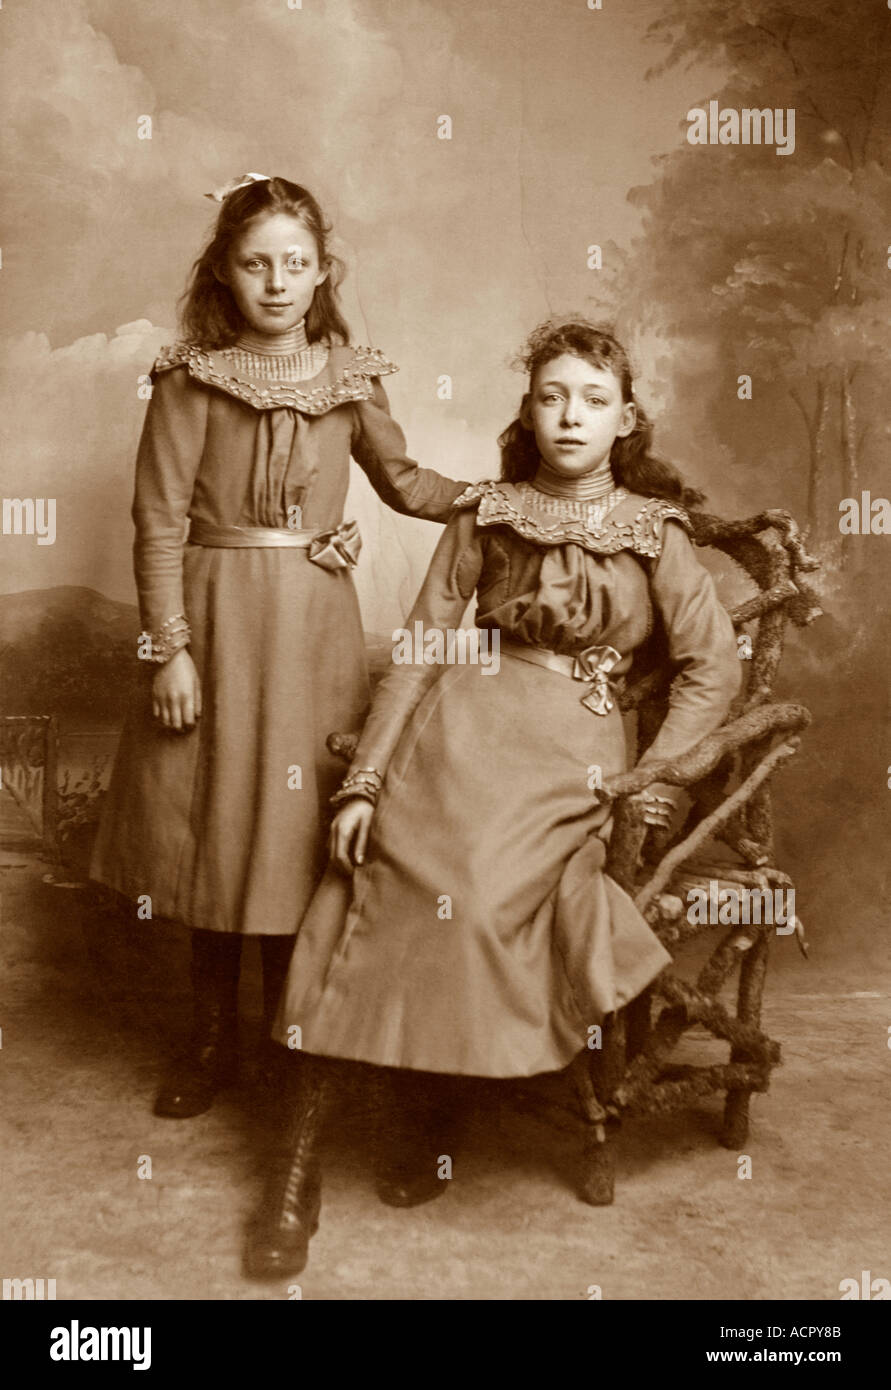 Ritratto originale di due graziose giovani ragazze dell'epoca vittoriana o edoardiana, probabilmente sorelle - circa 1899 Salisbury, Wiltshire, Regno Unito Foto Stock